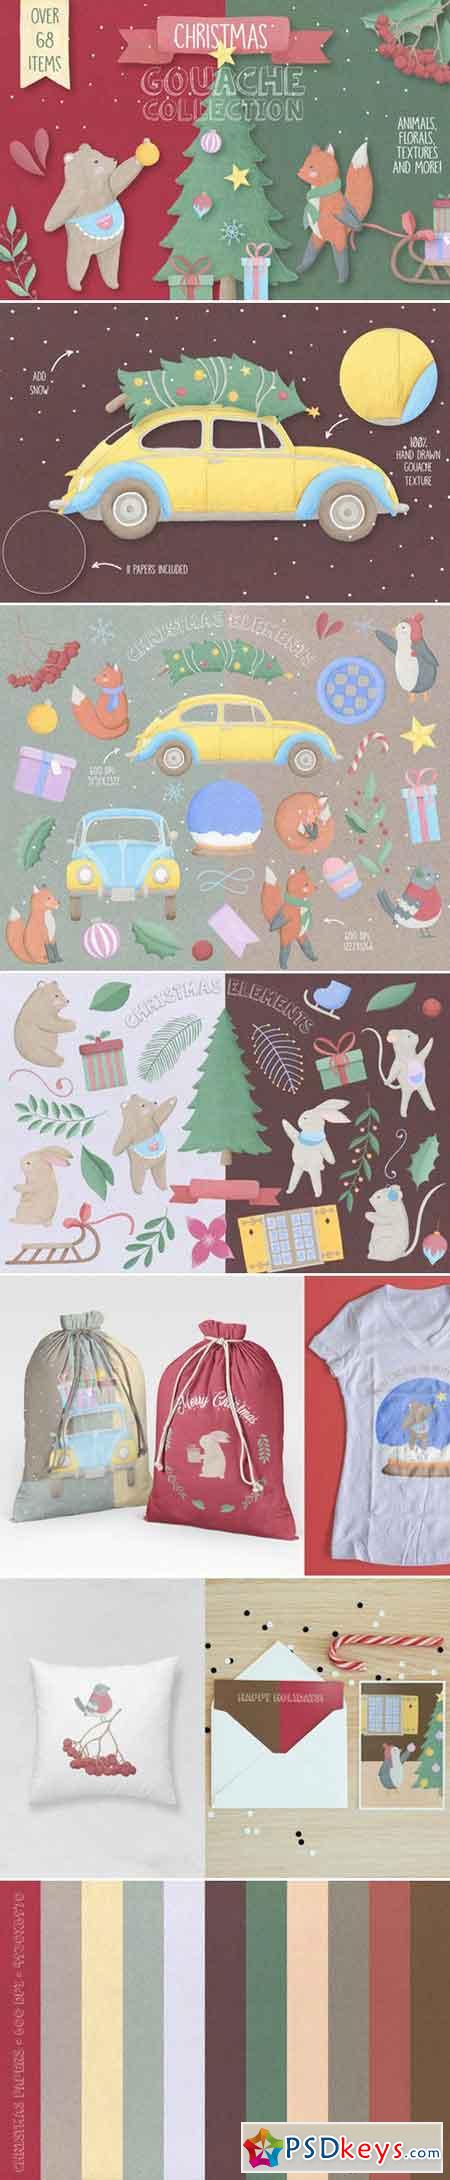 Christmas Gouache Collection 979999